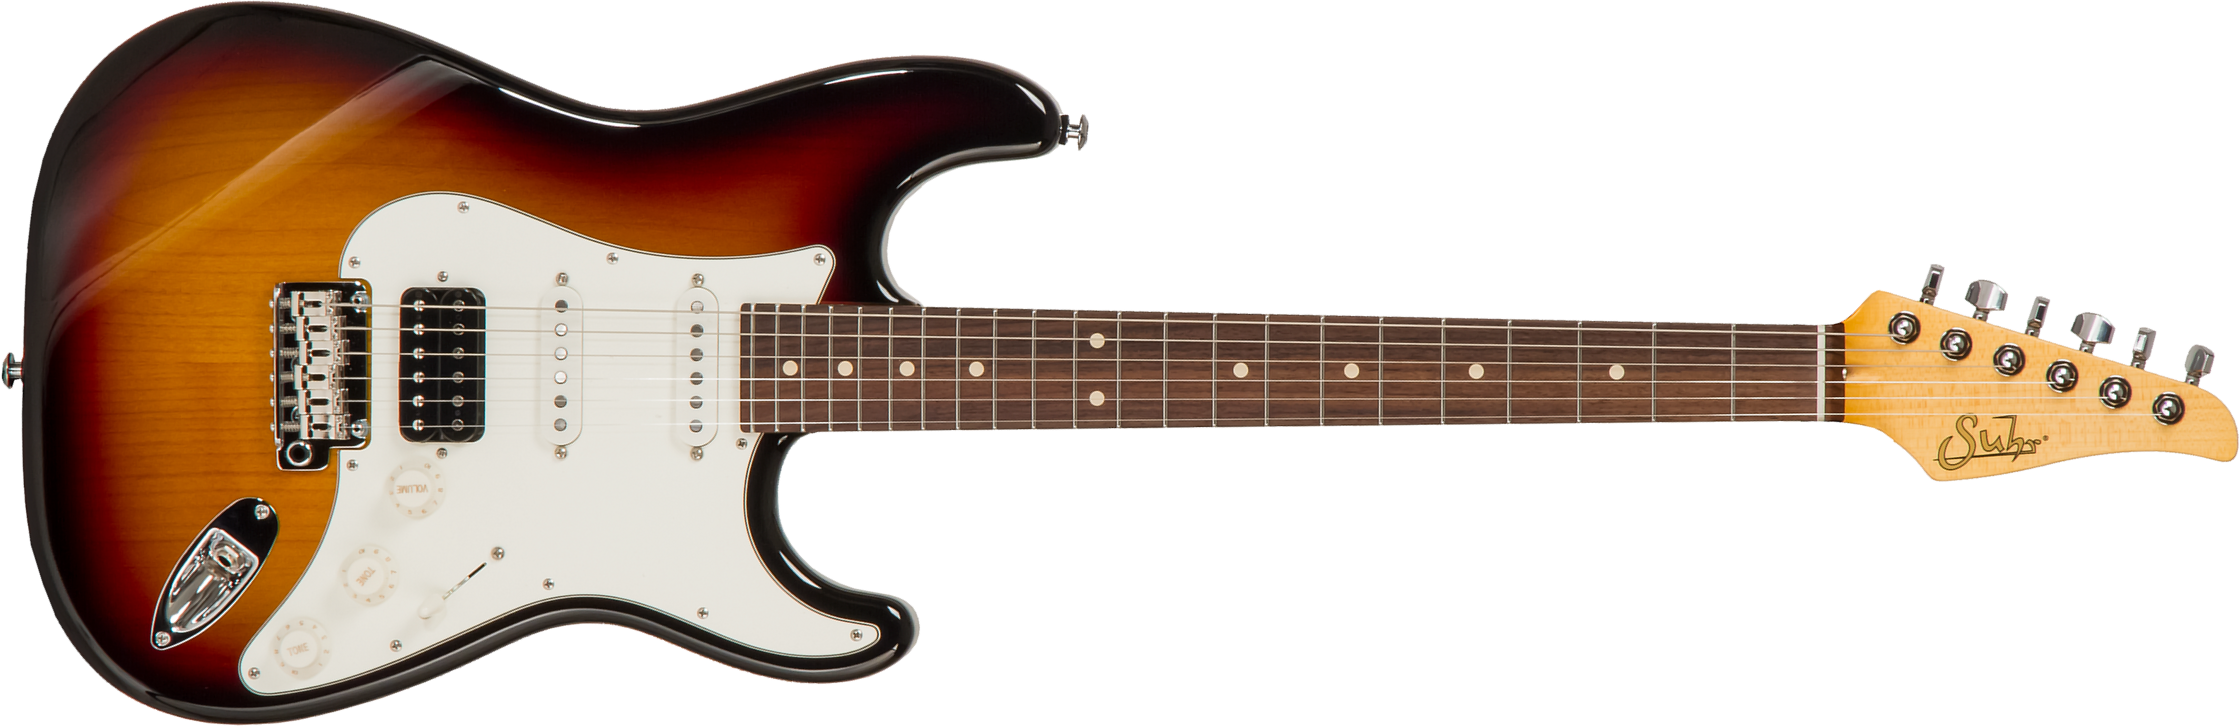 Suhr Classic S 01-cls-0001 Hss Trem Rw #70248 - 3 Tone Burst - Str shape electric guitar - Main picture